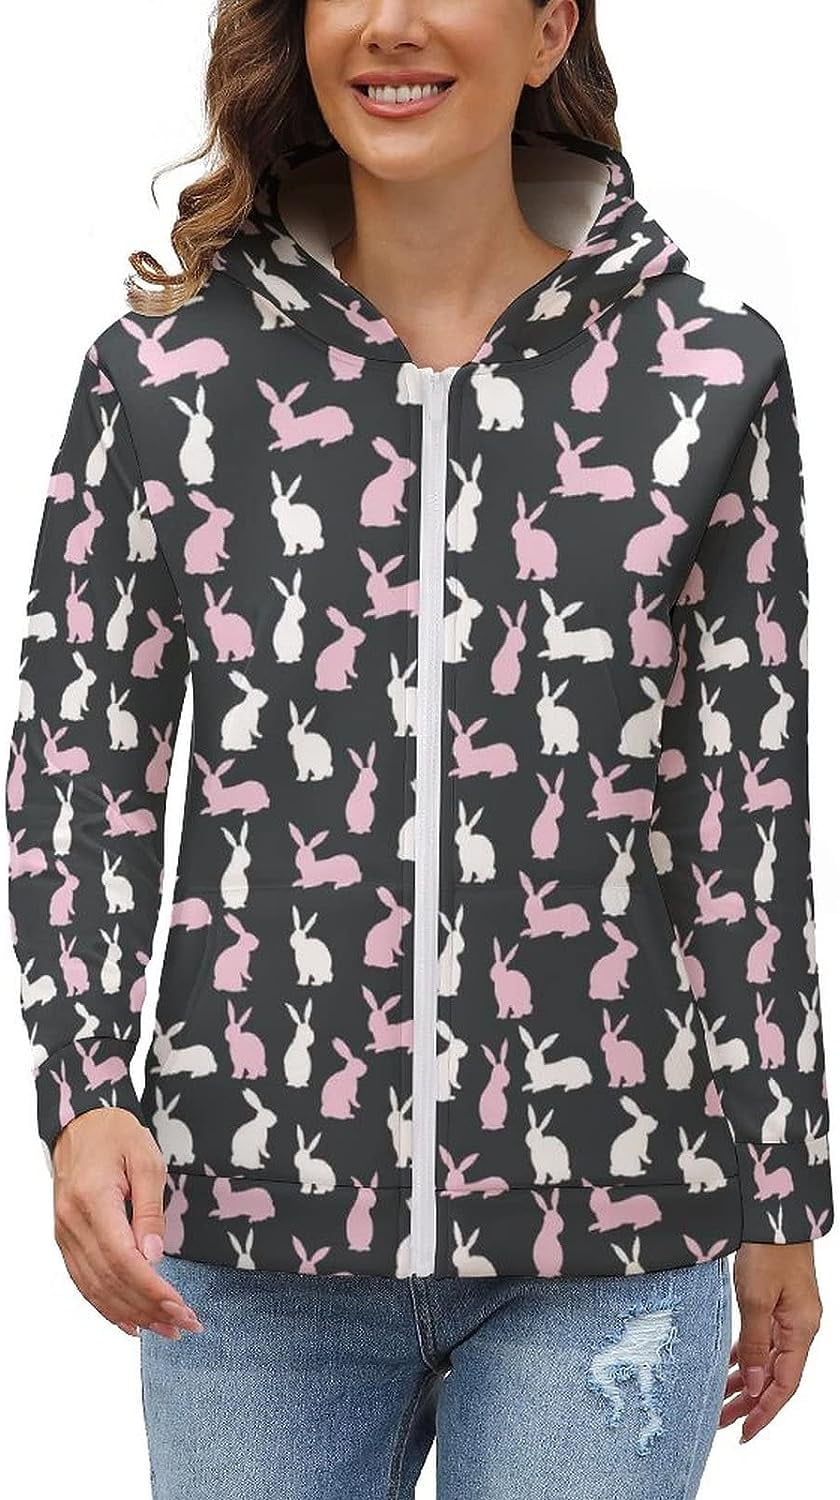 Bunny Pattern Women's Full-Zip Hooded Sweatshirt Soft Fleece Jacket ...